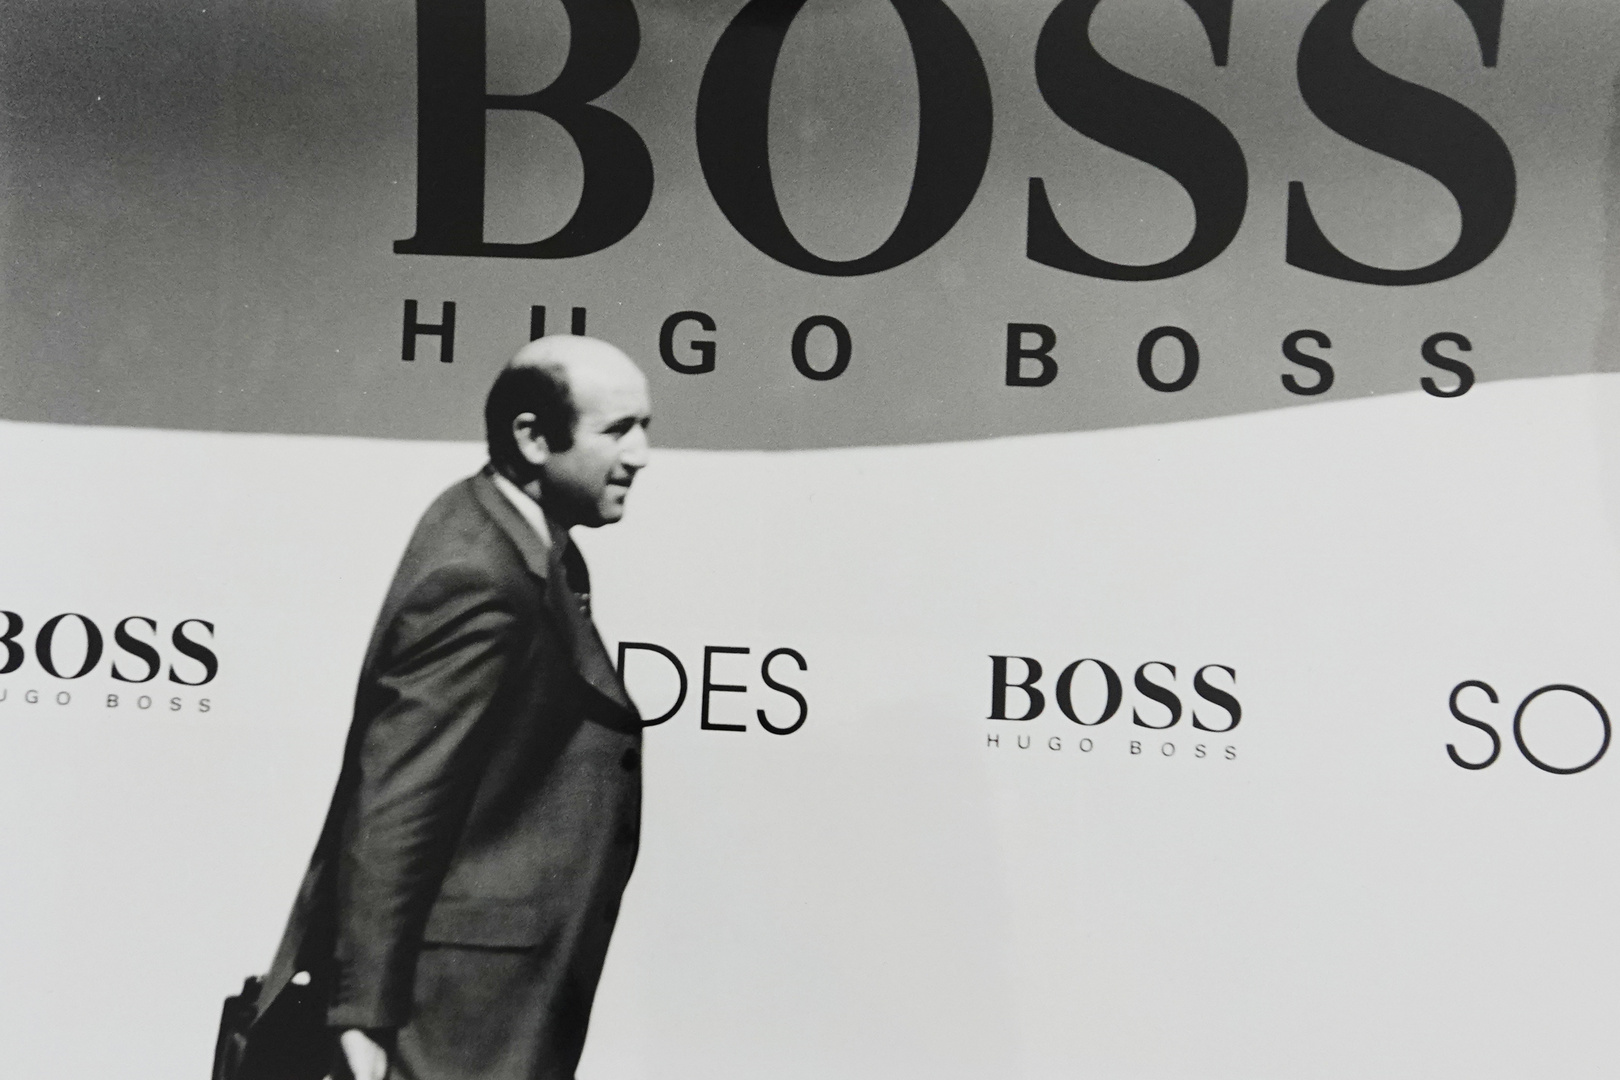 " Der Boss "